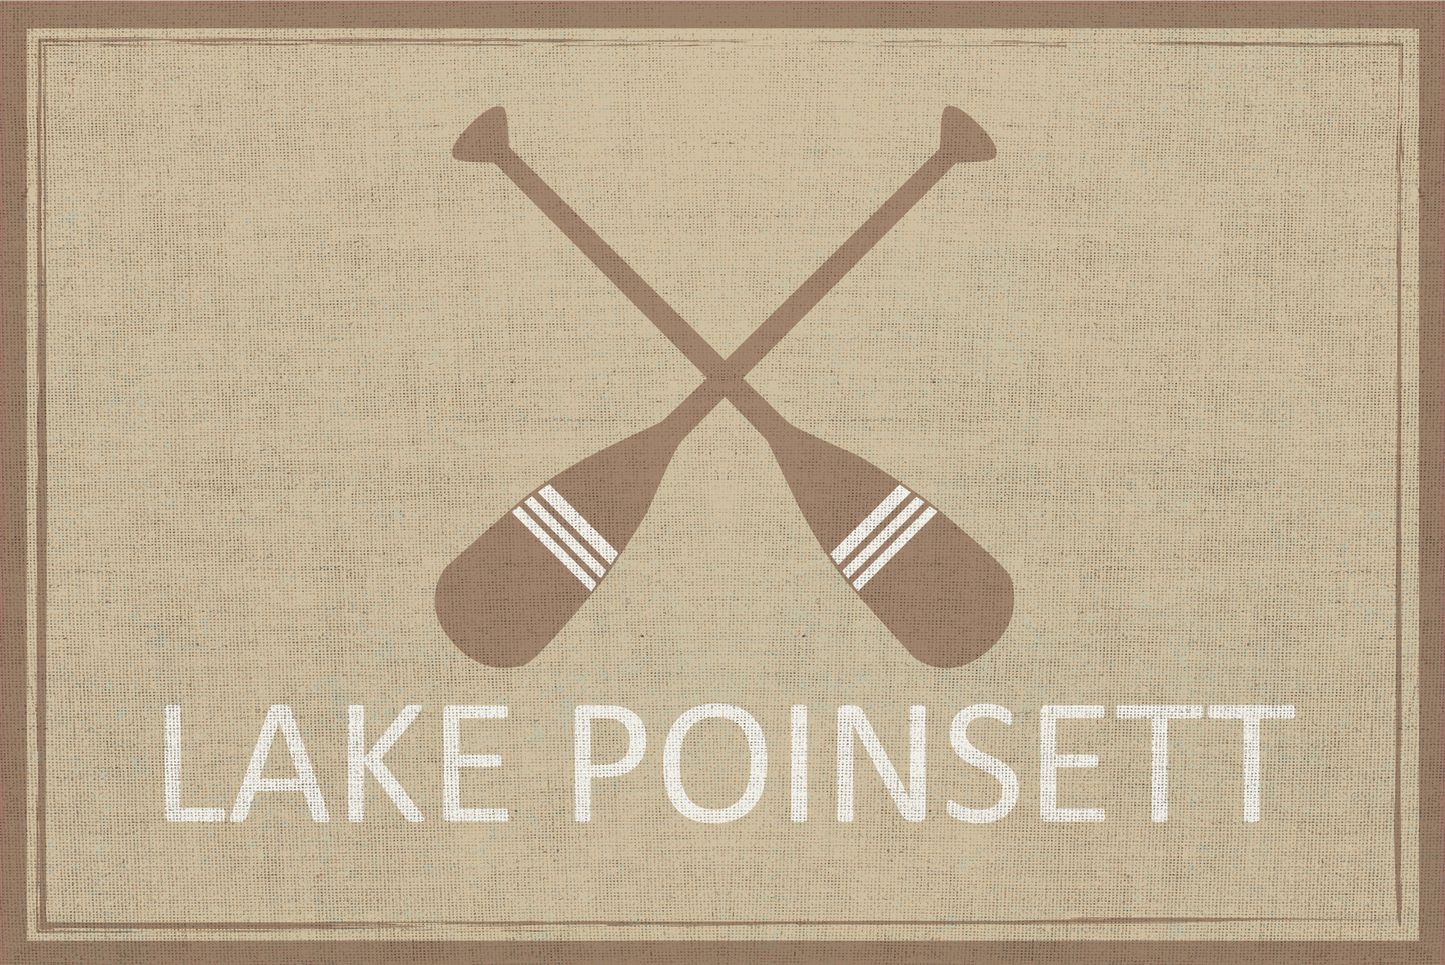 Lake Poinsett Floor Mat